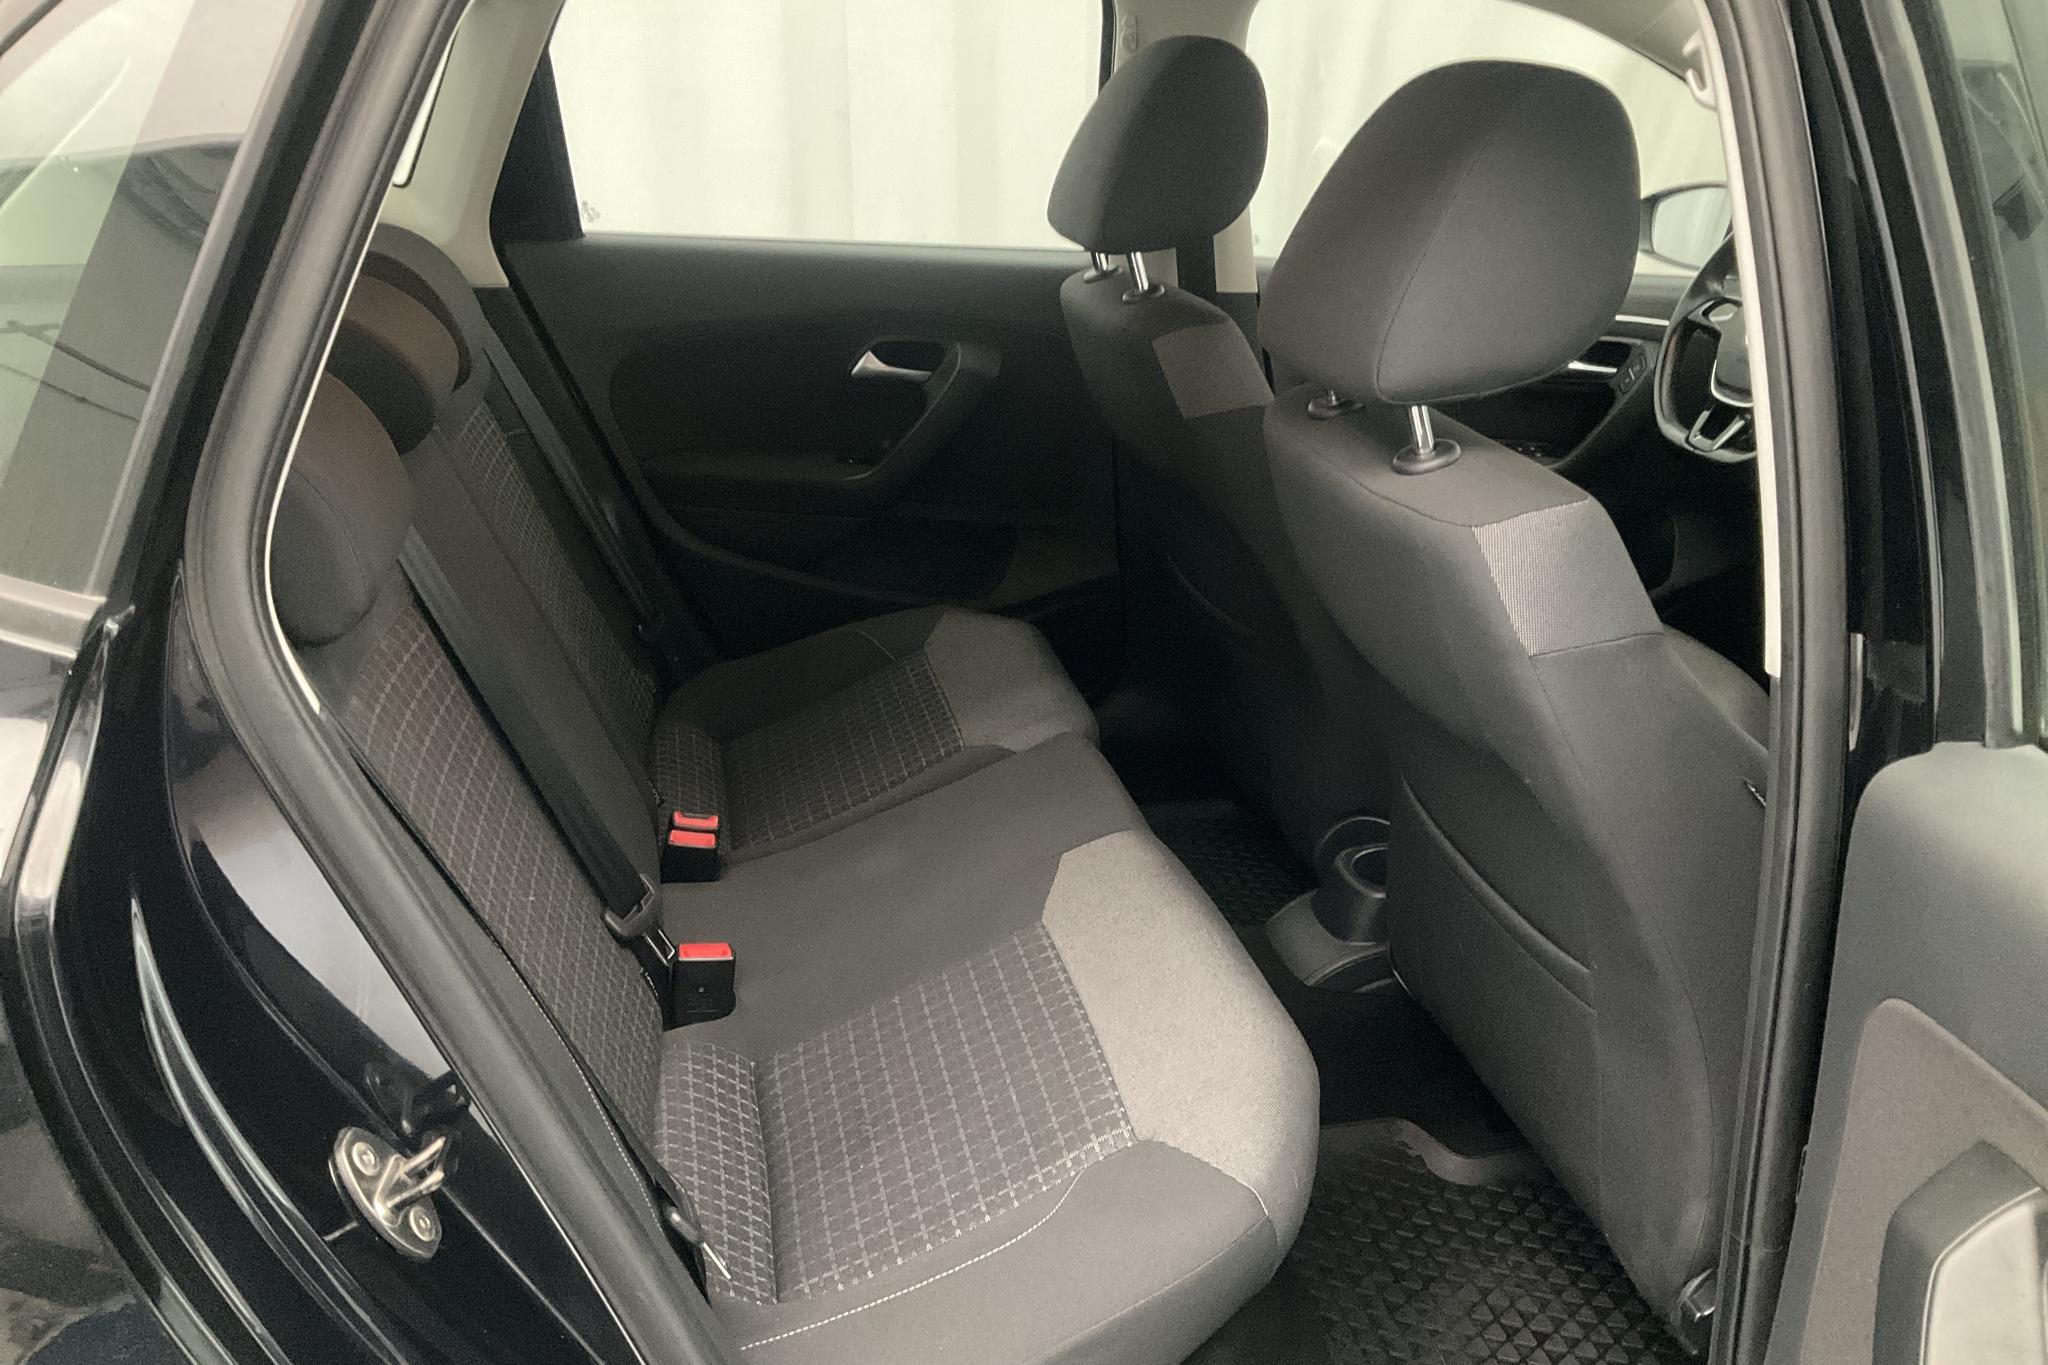 VW Polo 1.2 TSI 5dr (90hk) - 4 549 mil - Automat - svart - 2016